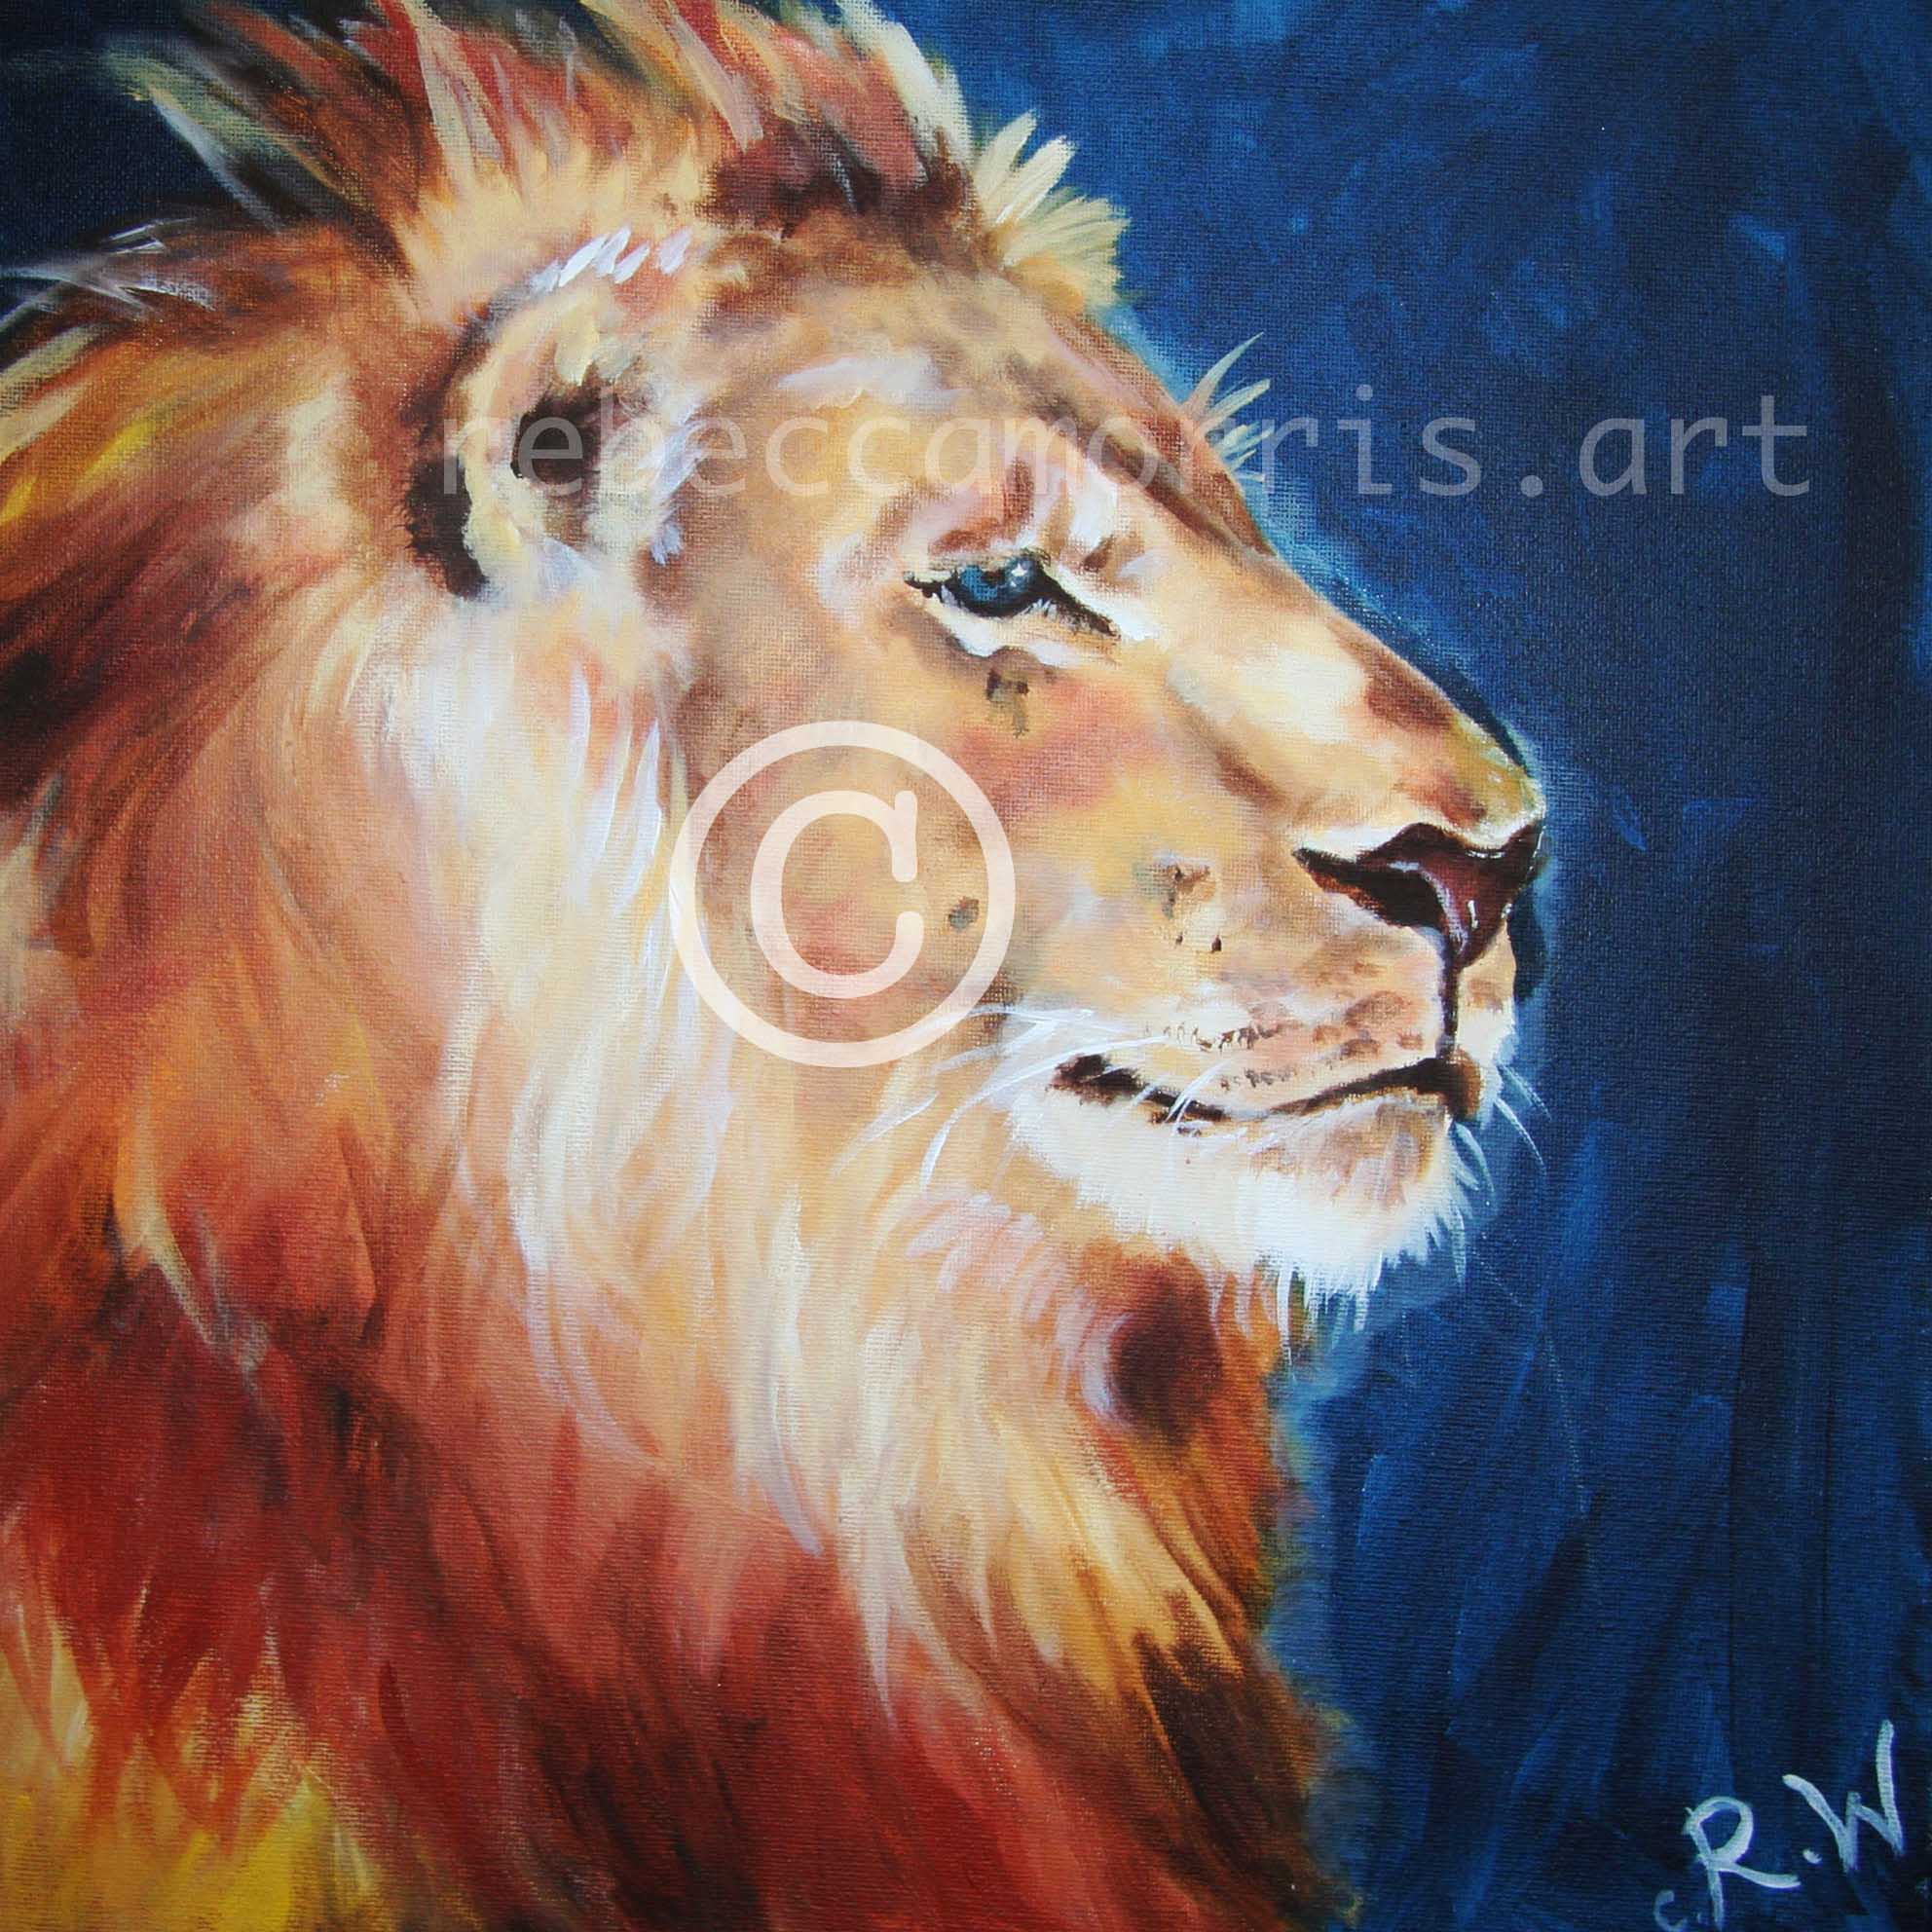 Rebeccamorris Art - Aslan Lion